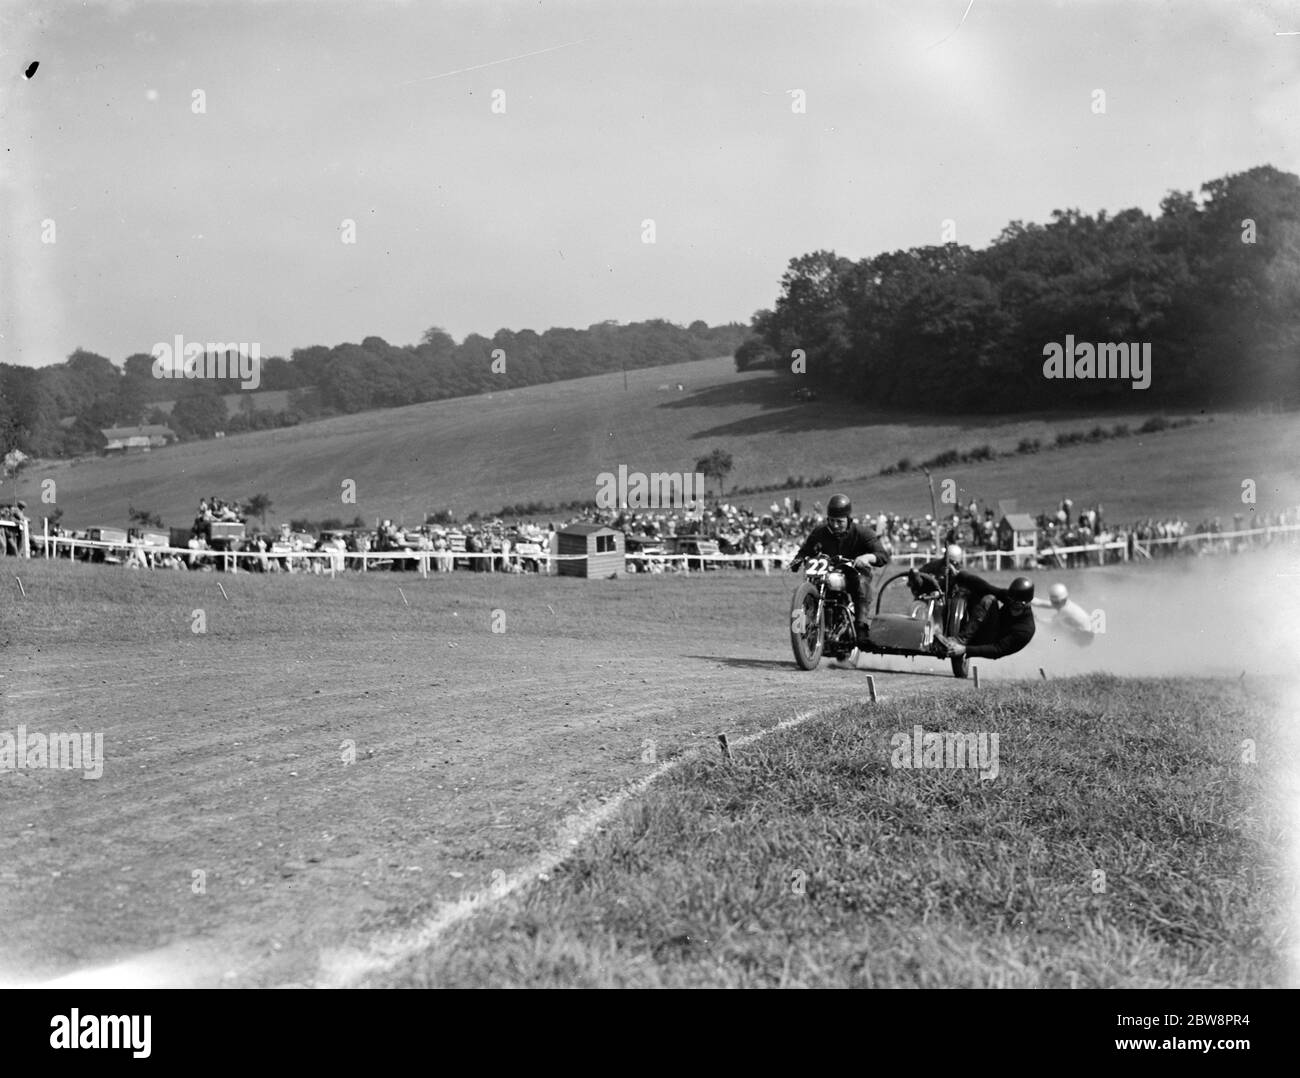 Courses de motocyclisme à Brands Hatch . Deux des motos de voiture latérale se bousculent pour se positionner sur un coin pendant la course . 1936 Banque D'Images